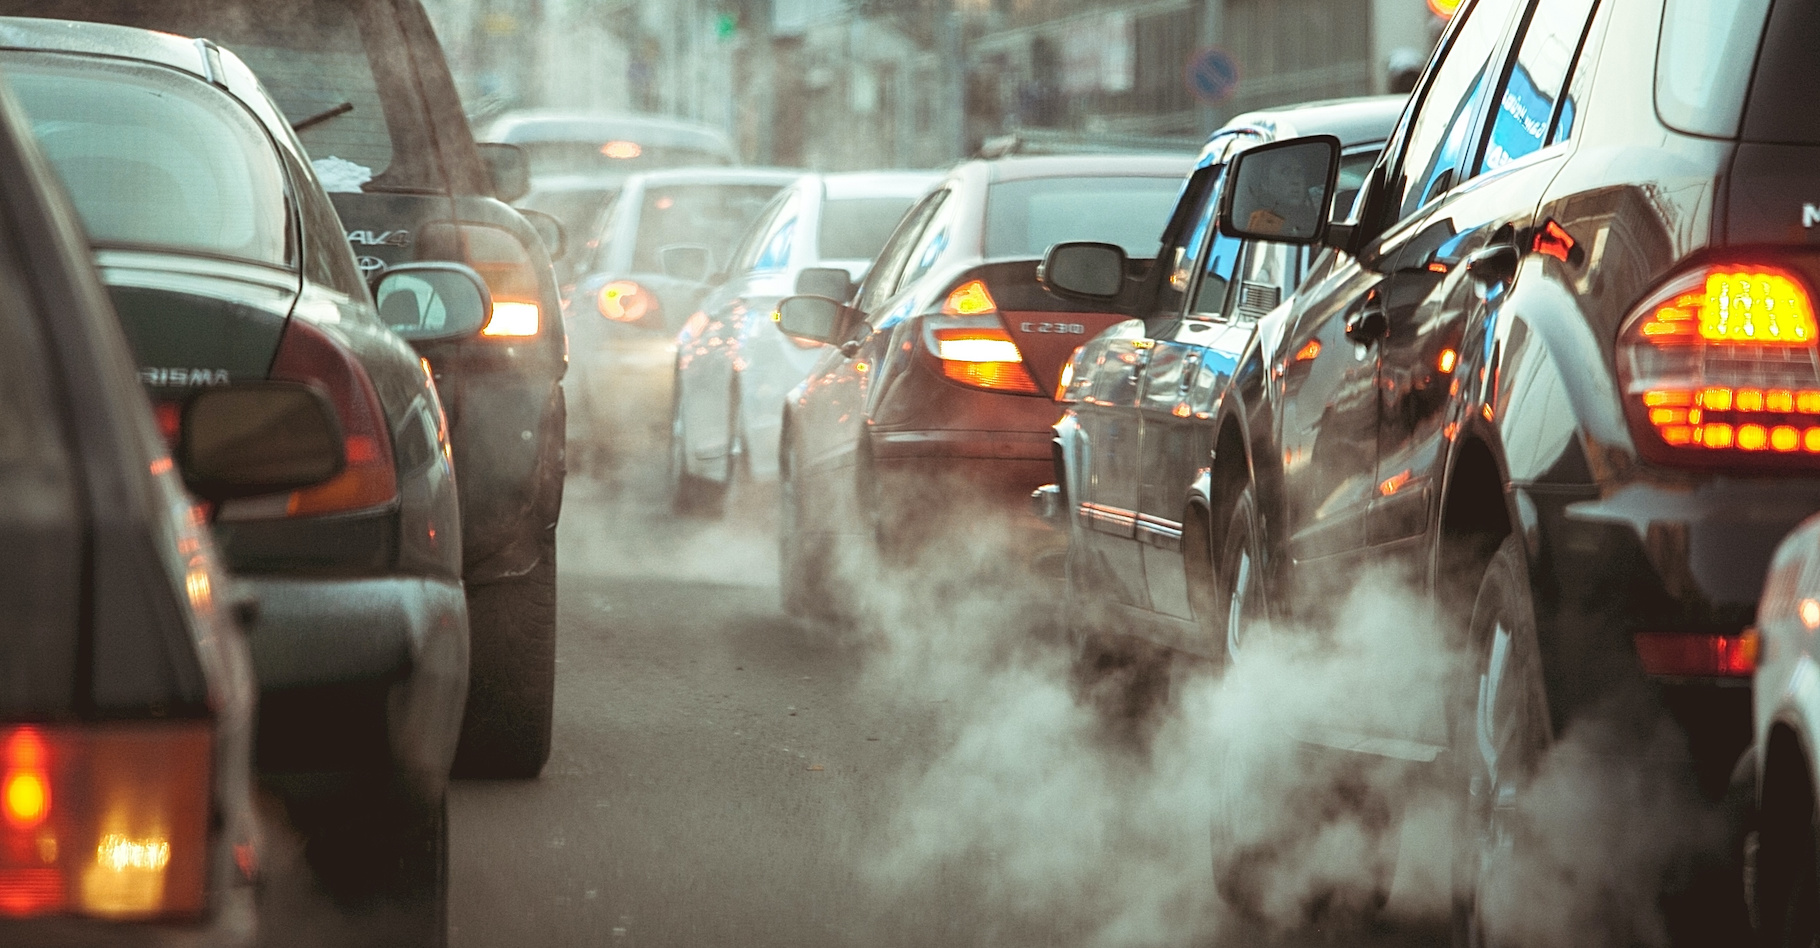 Des chercheurs de l’université du Texas montrent le rôle des émissions des voitures dans la nucléation et le développement des particules ultrafines. © Семен Саливанчук, Adobe Stock